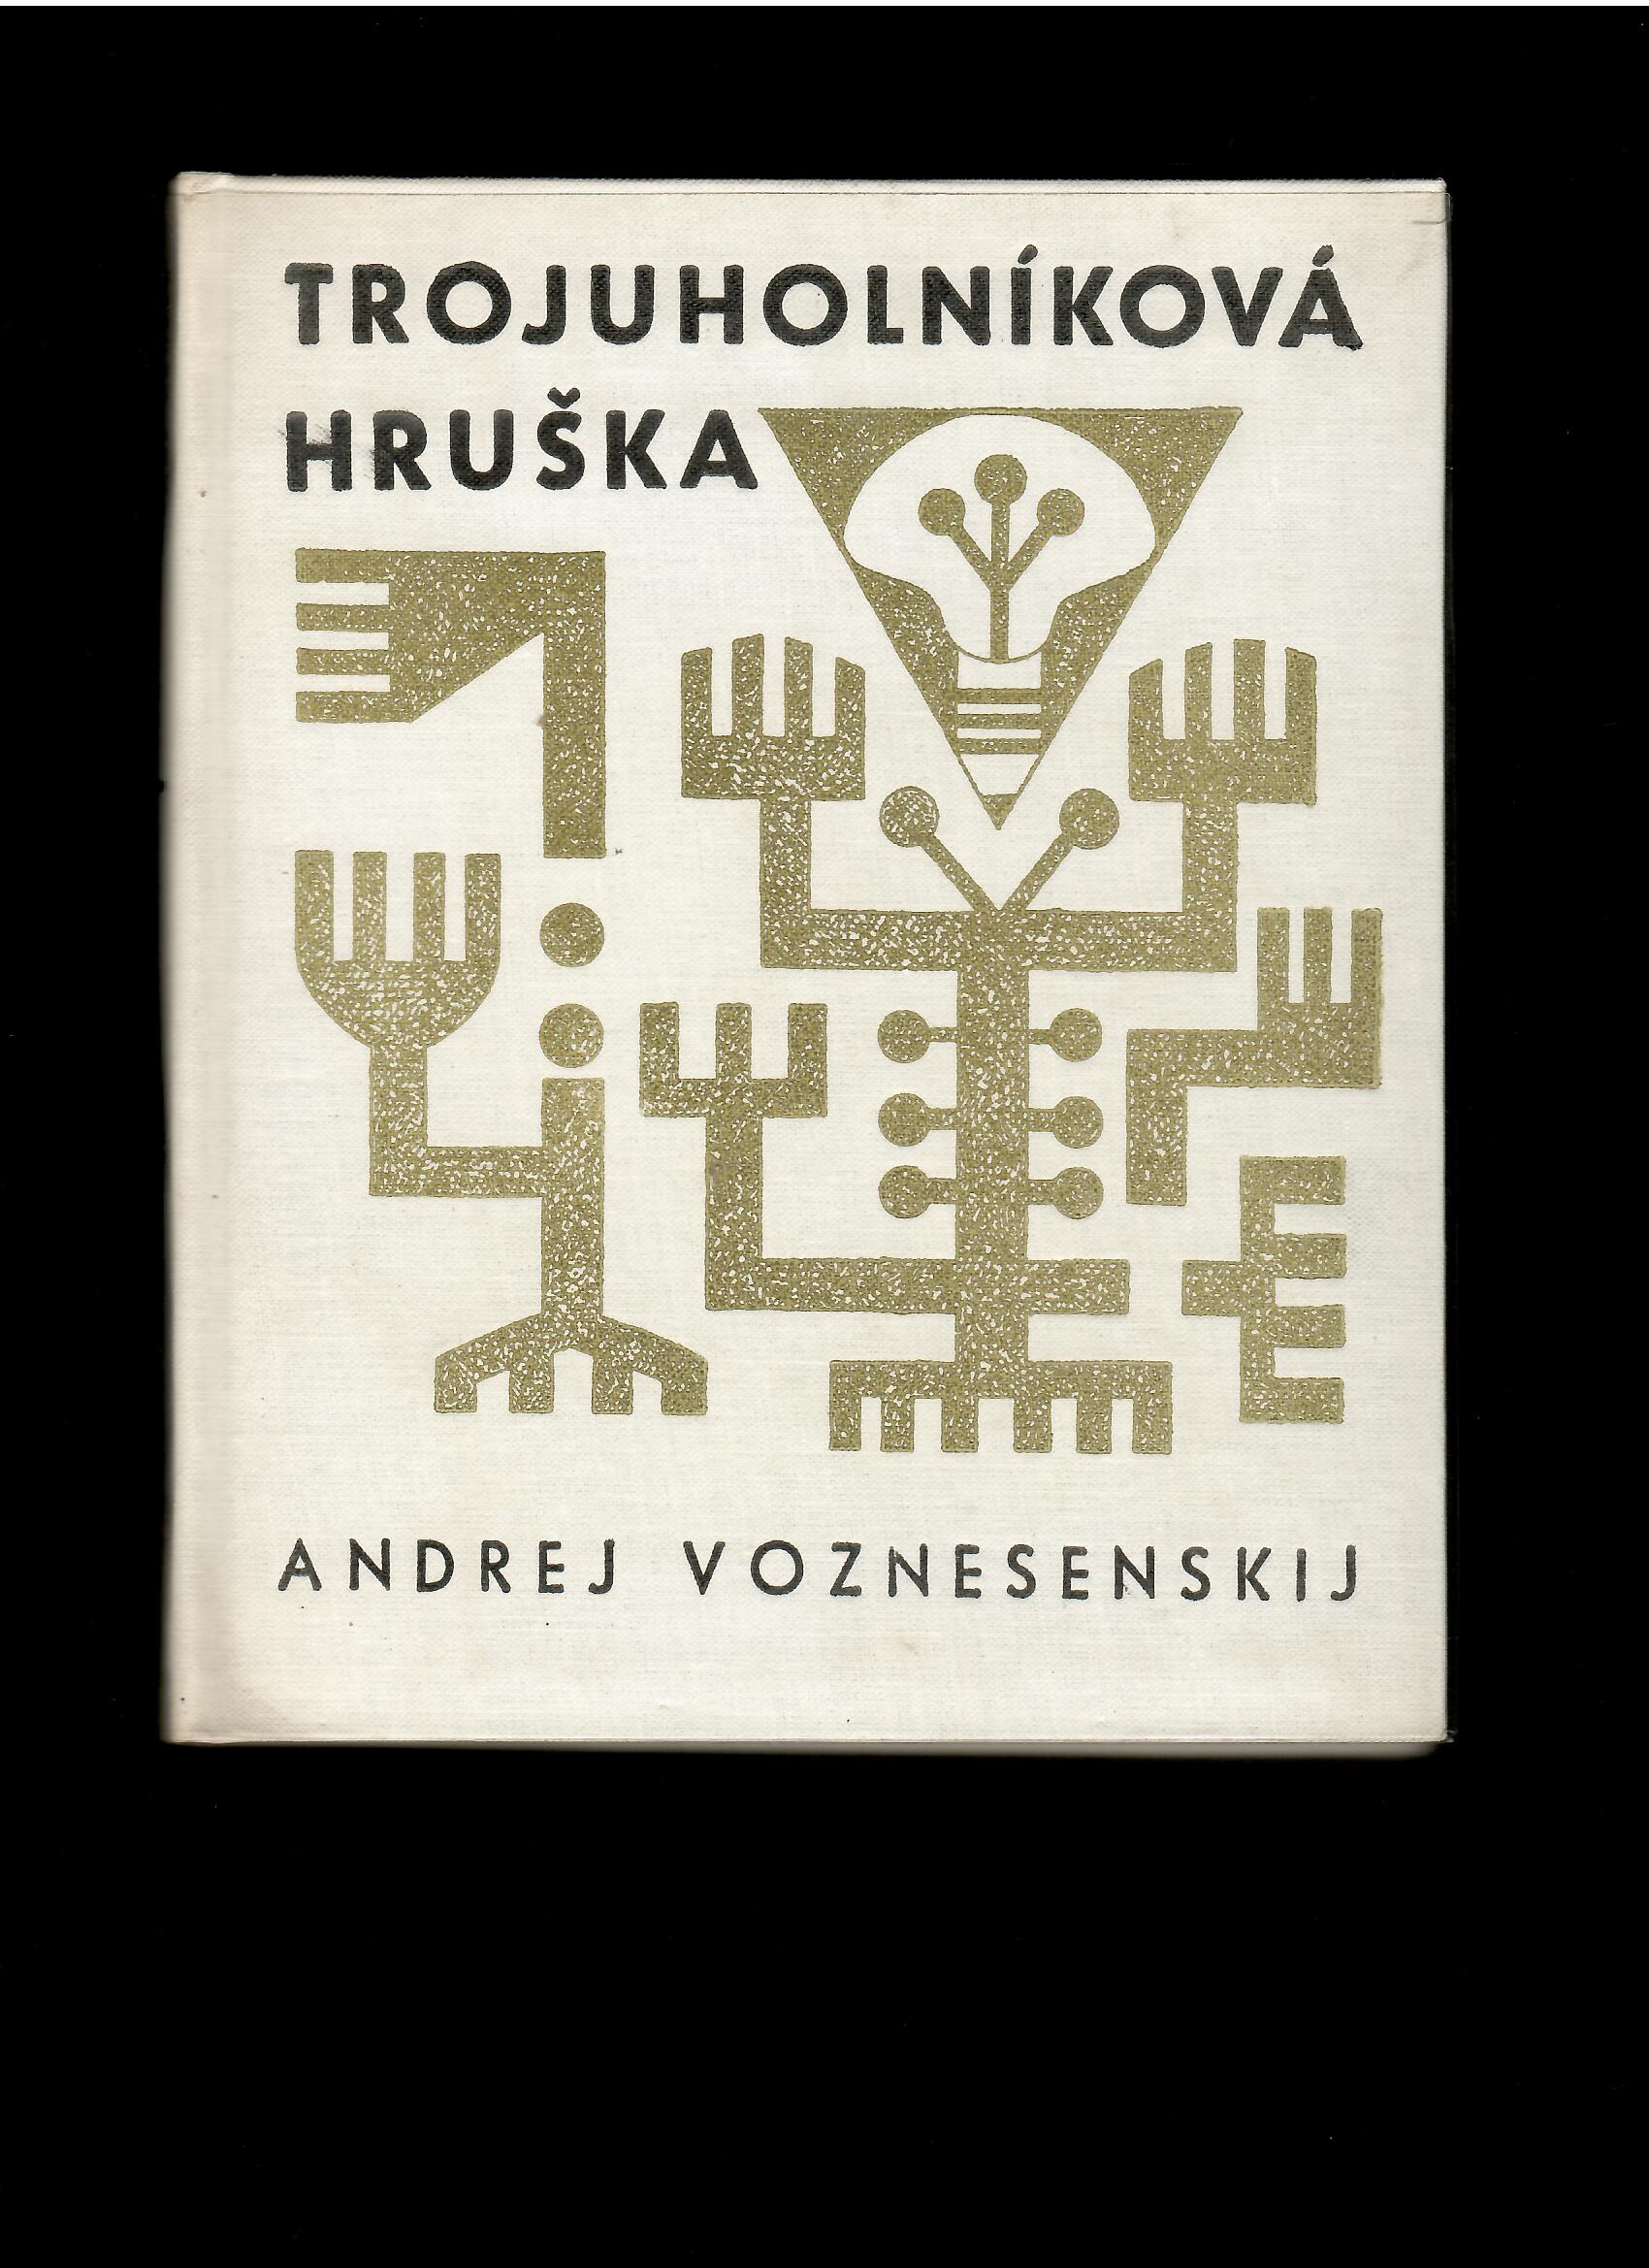 Andrej Voznesenskij: Trojuholníková hruška /il. Ladislav Guderna/